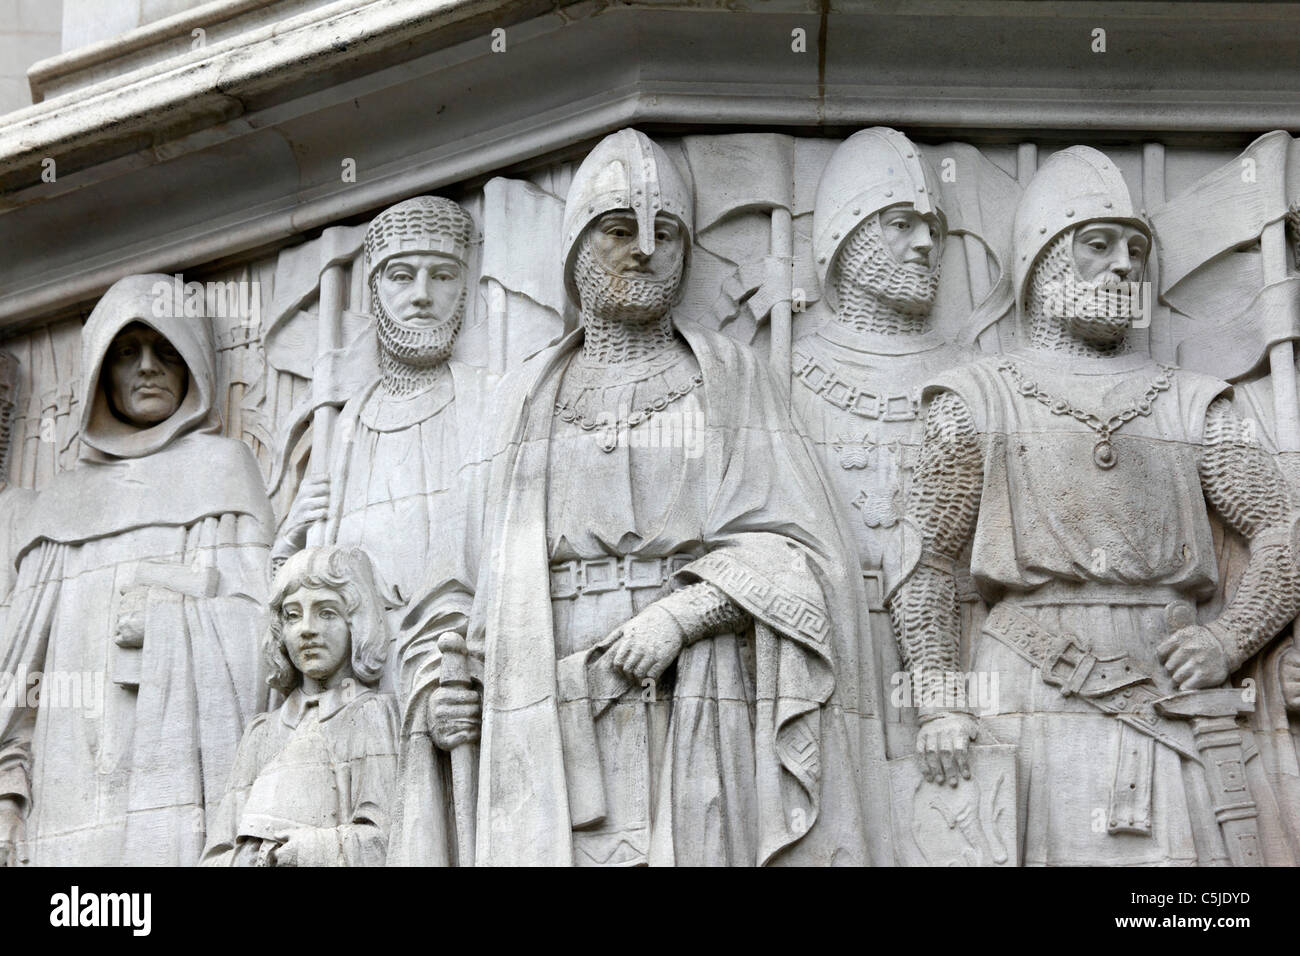 Particolare di scultura in pietra sopra l'ingresso del Middlesex Guildhall edificio, casa della Corte Suprema e del Consiglio Privy, Westminster, Londra, Inghilterra Foto Stock